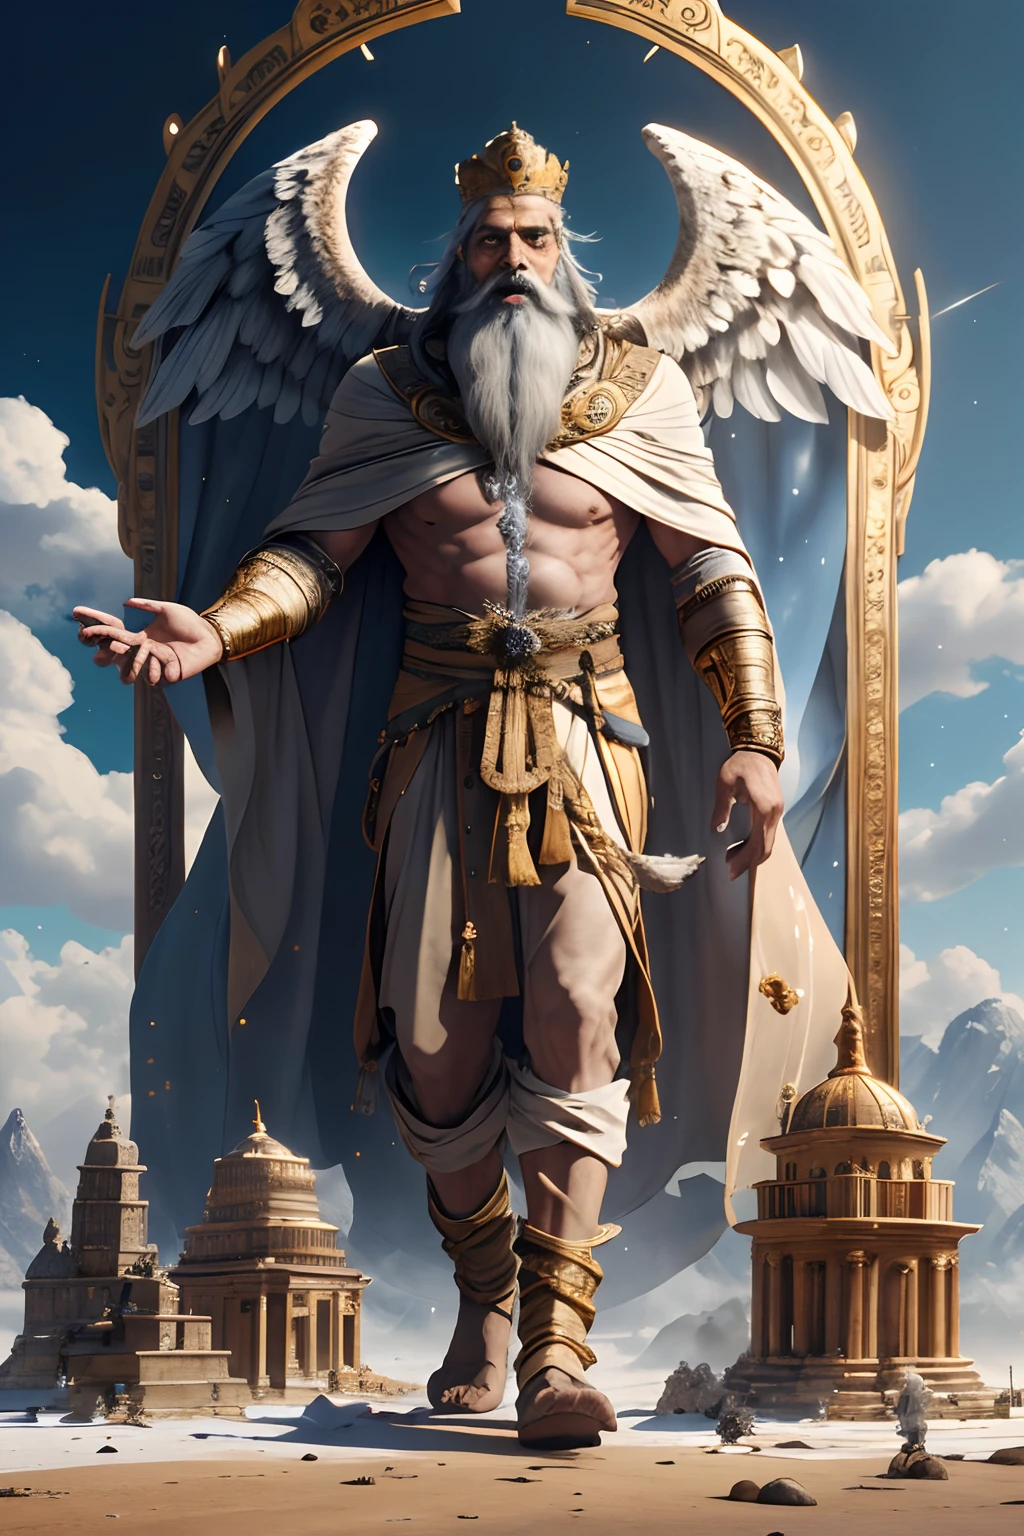 灰色の長いあごひげと薄茶色の肌の巨人。彼は神であり、神アヌ。金とハイテクな古代のマント、王冠、左腕にハイテクな腕時計を身に着け、生命の樹の前に立っている。右手にはポータル装置、左手には古代のバッグを持っている。大きな金色の鷲の翼を持ち、背景にはボウルに入った土が入った大きなハイテクな寺院がある。